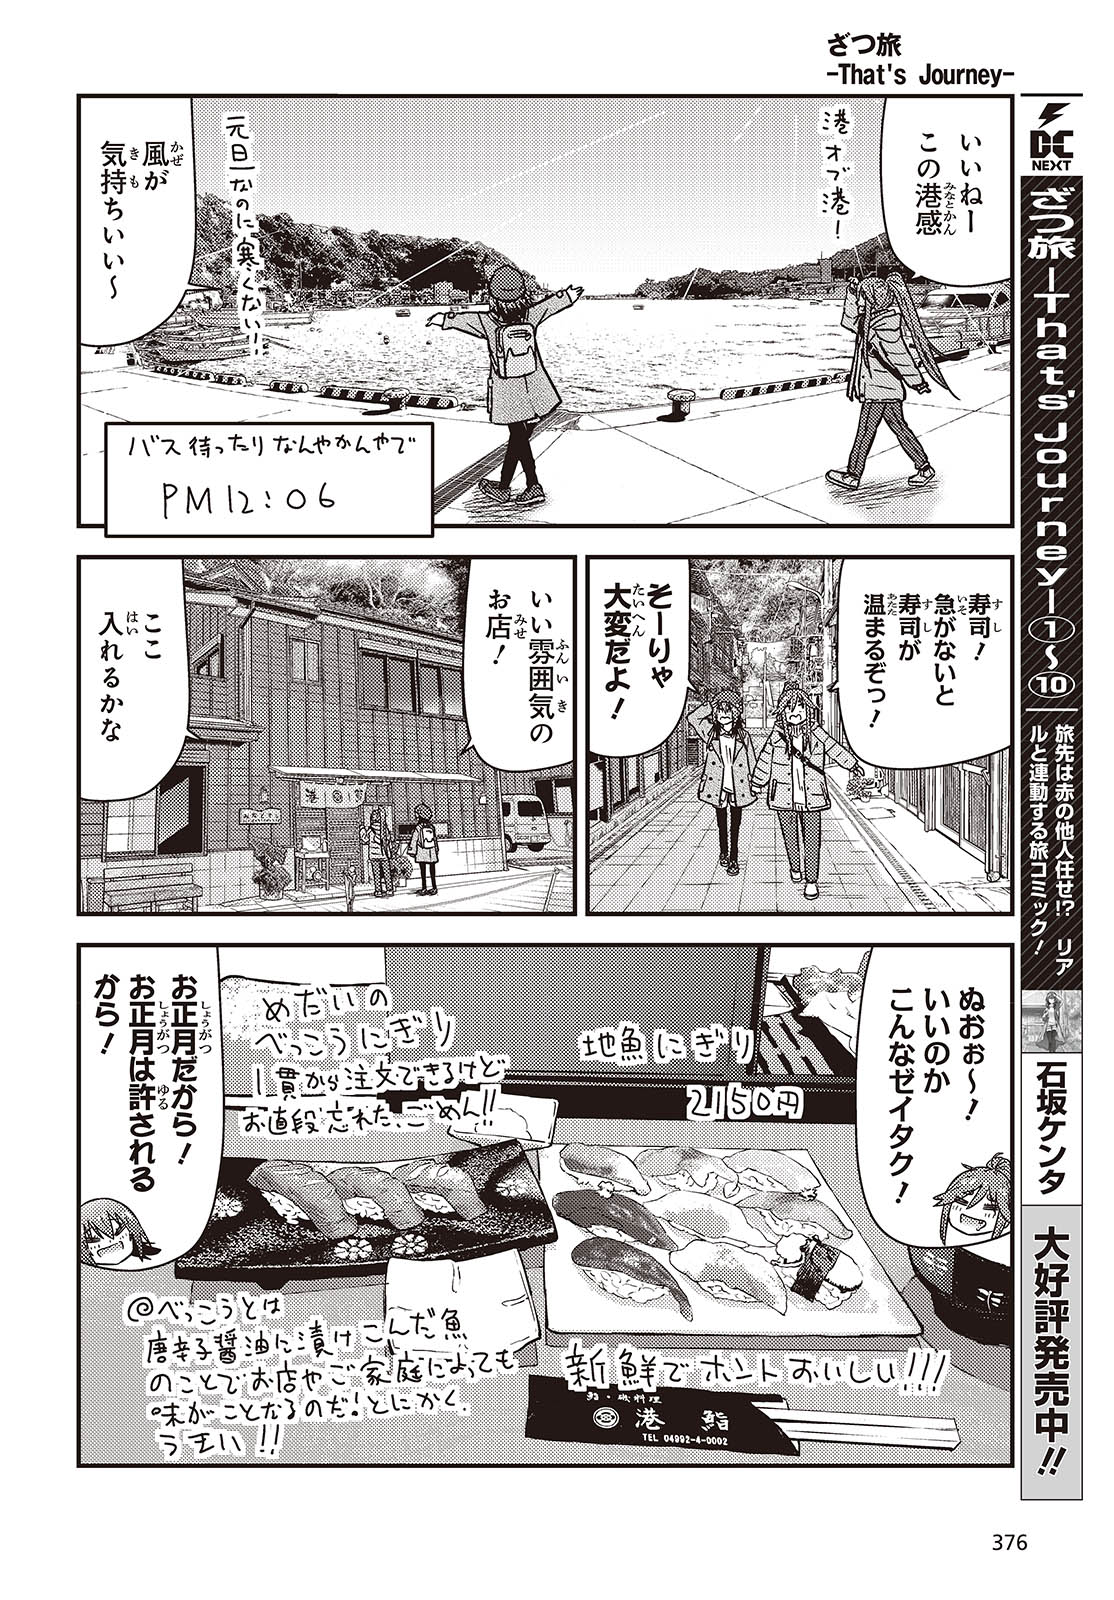 ざつ旅-That’s Journey- 第37話 - Page 20